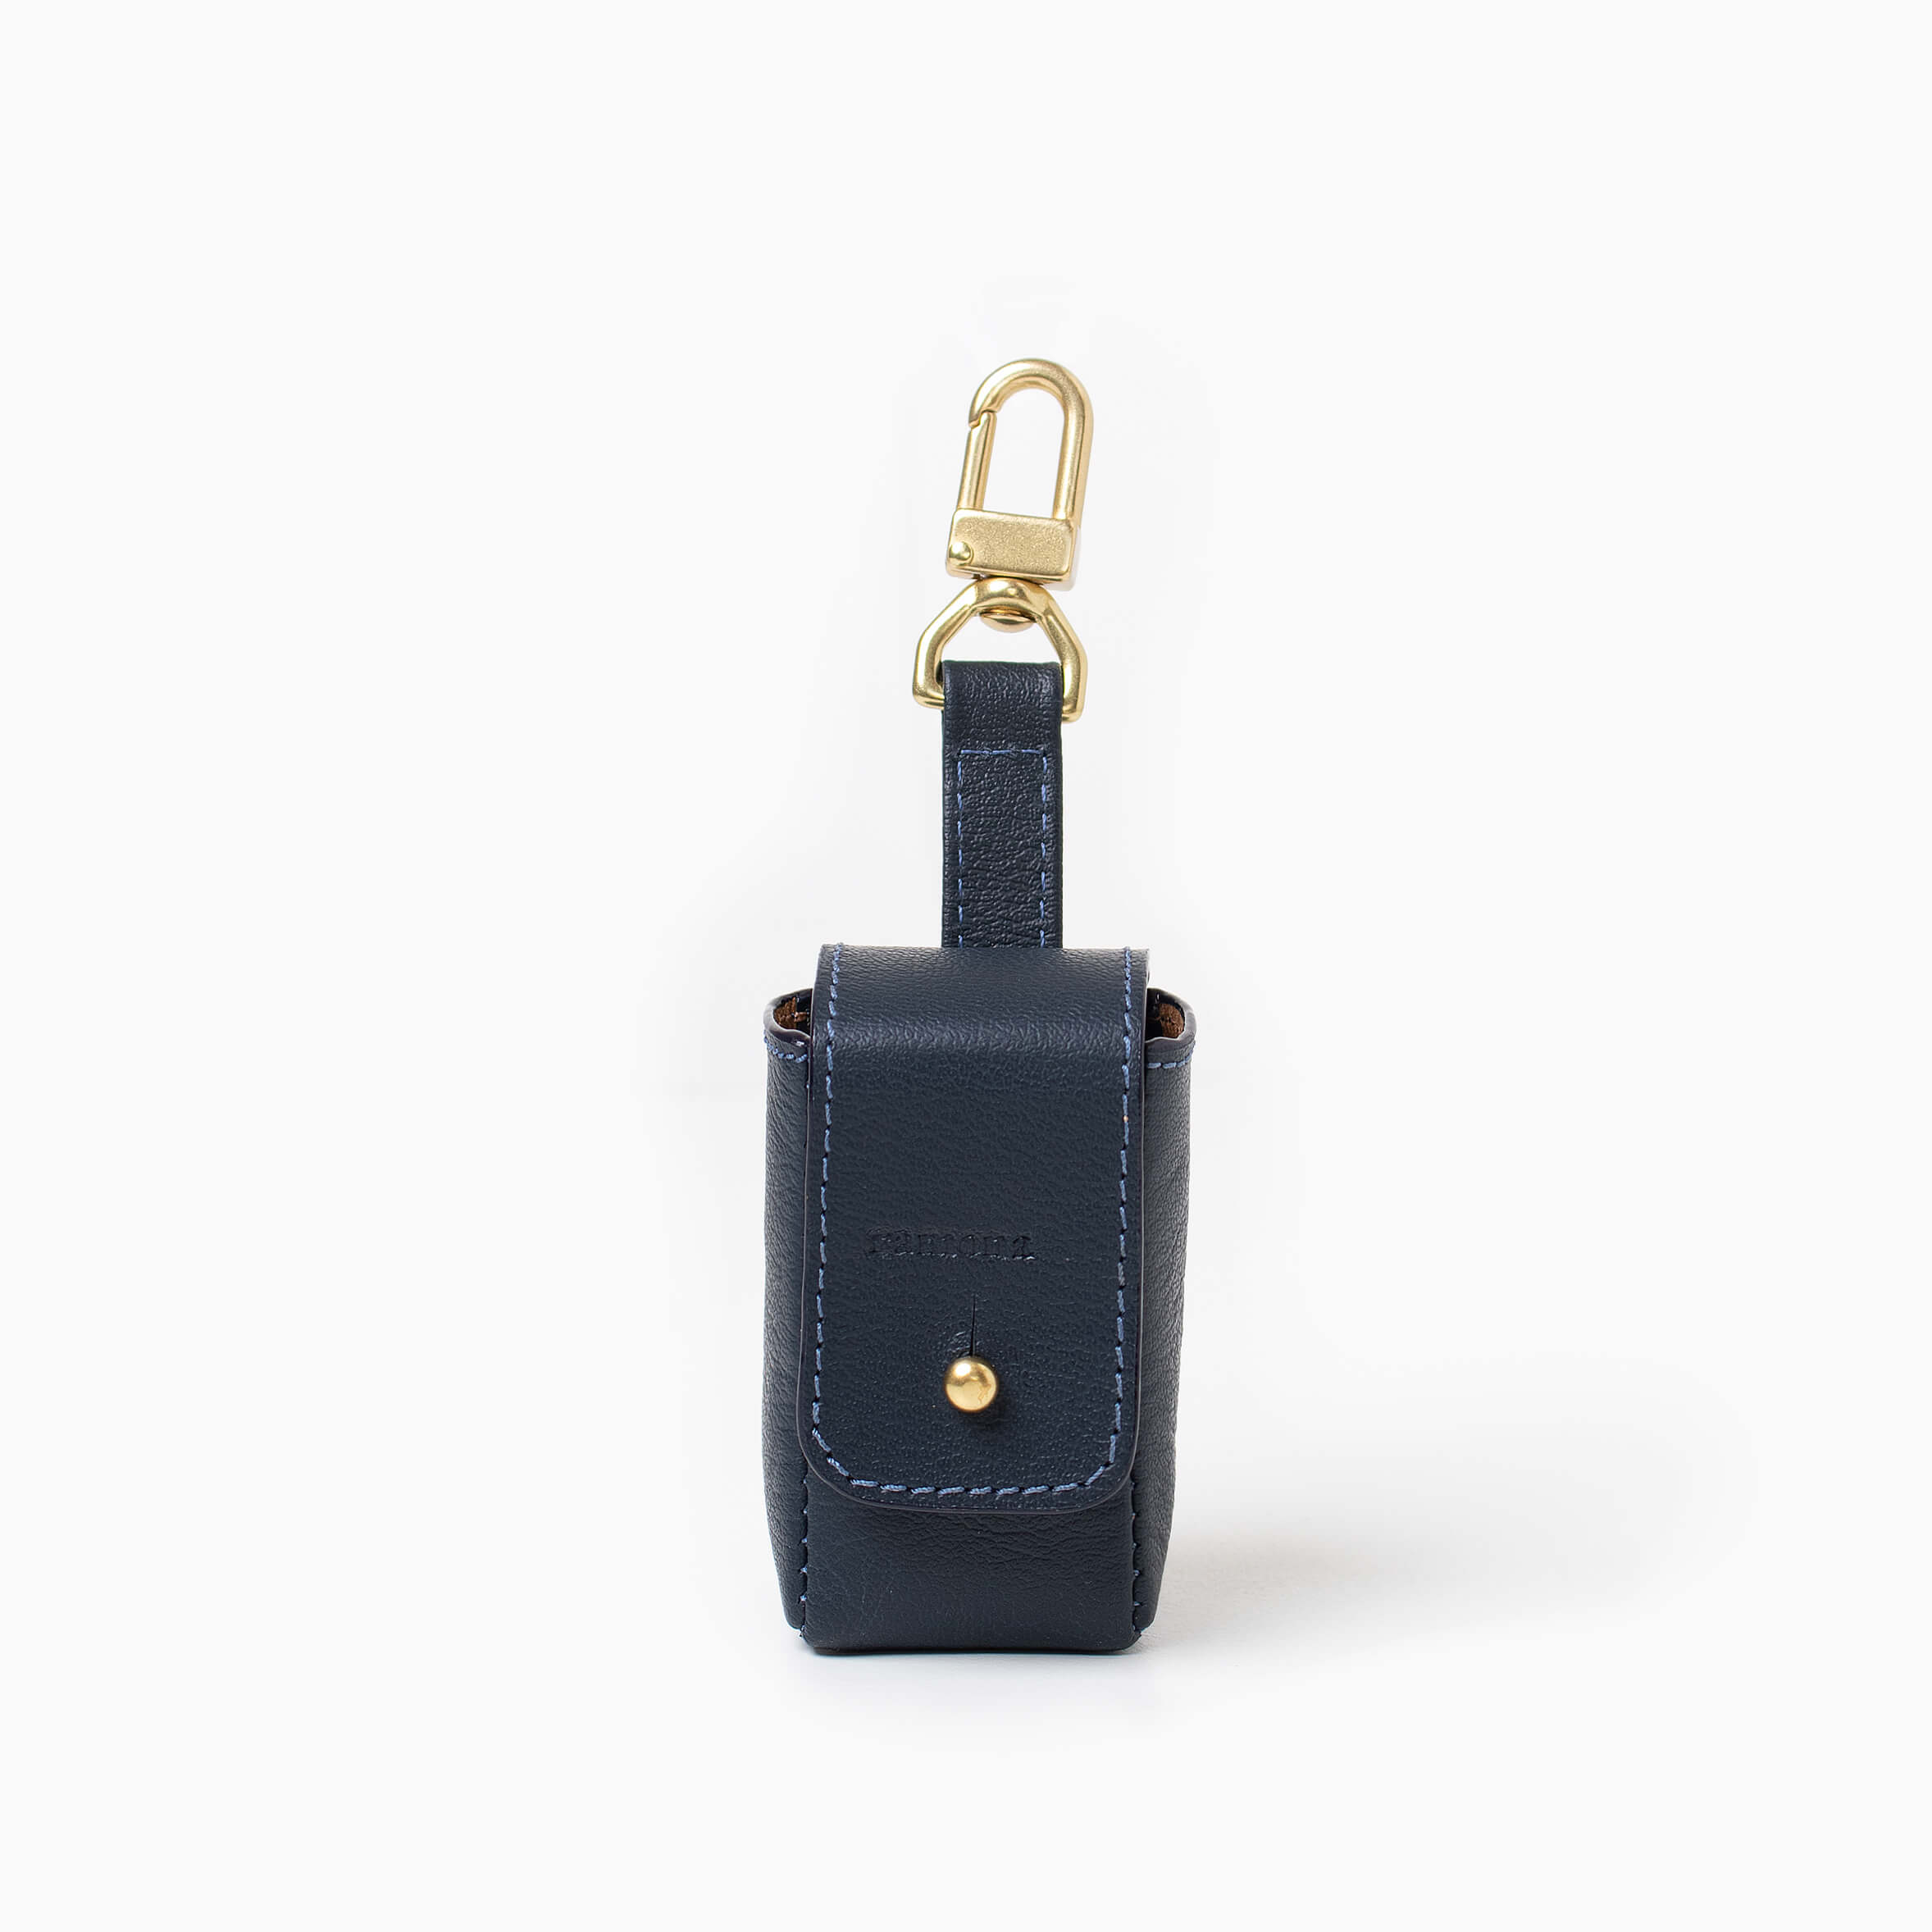 Navy blue leather bag holder with with brass hardware. Poop bag holder.